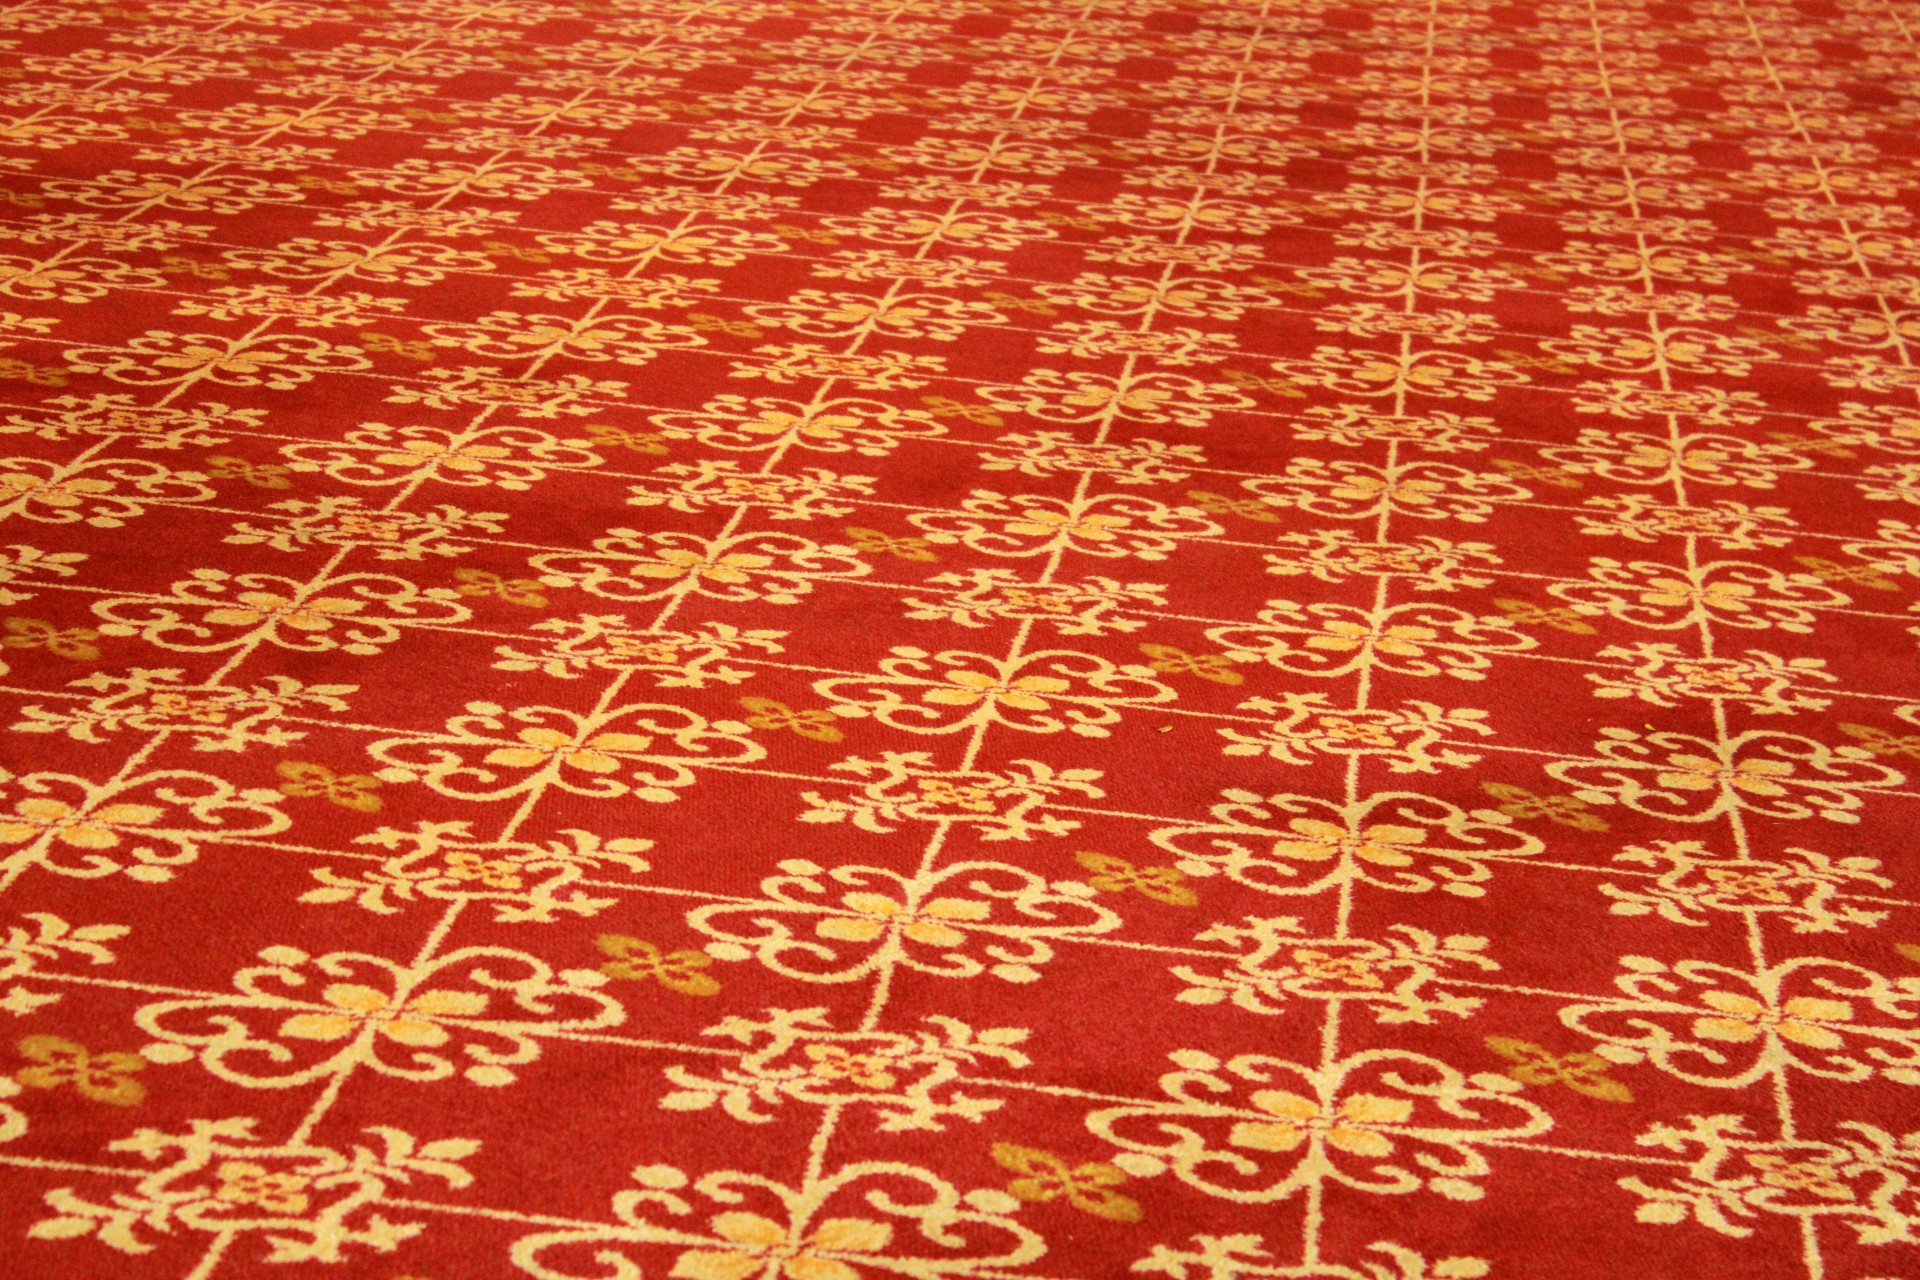 red carpet background red carpet background free photo